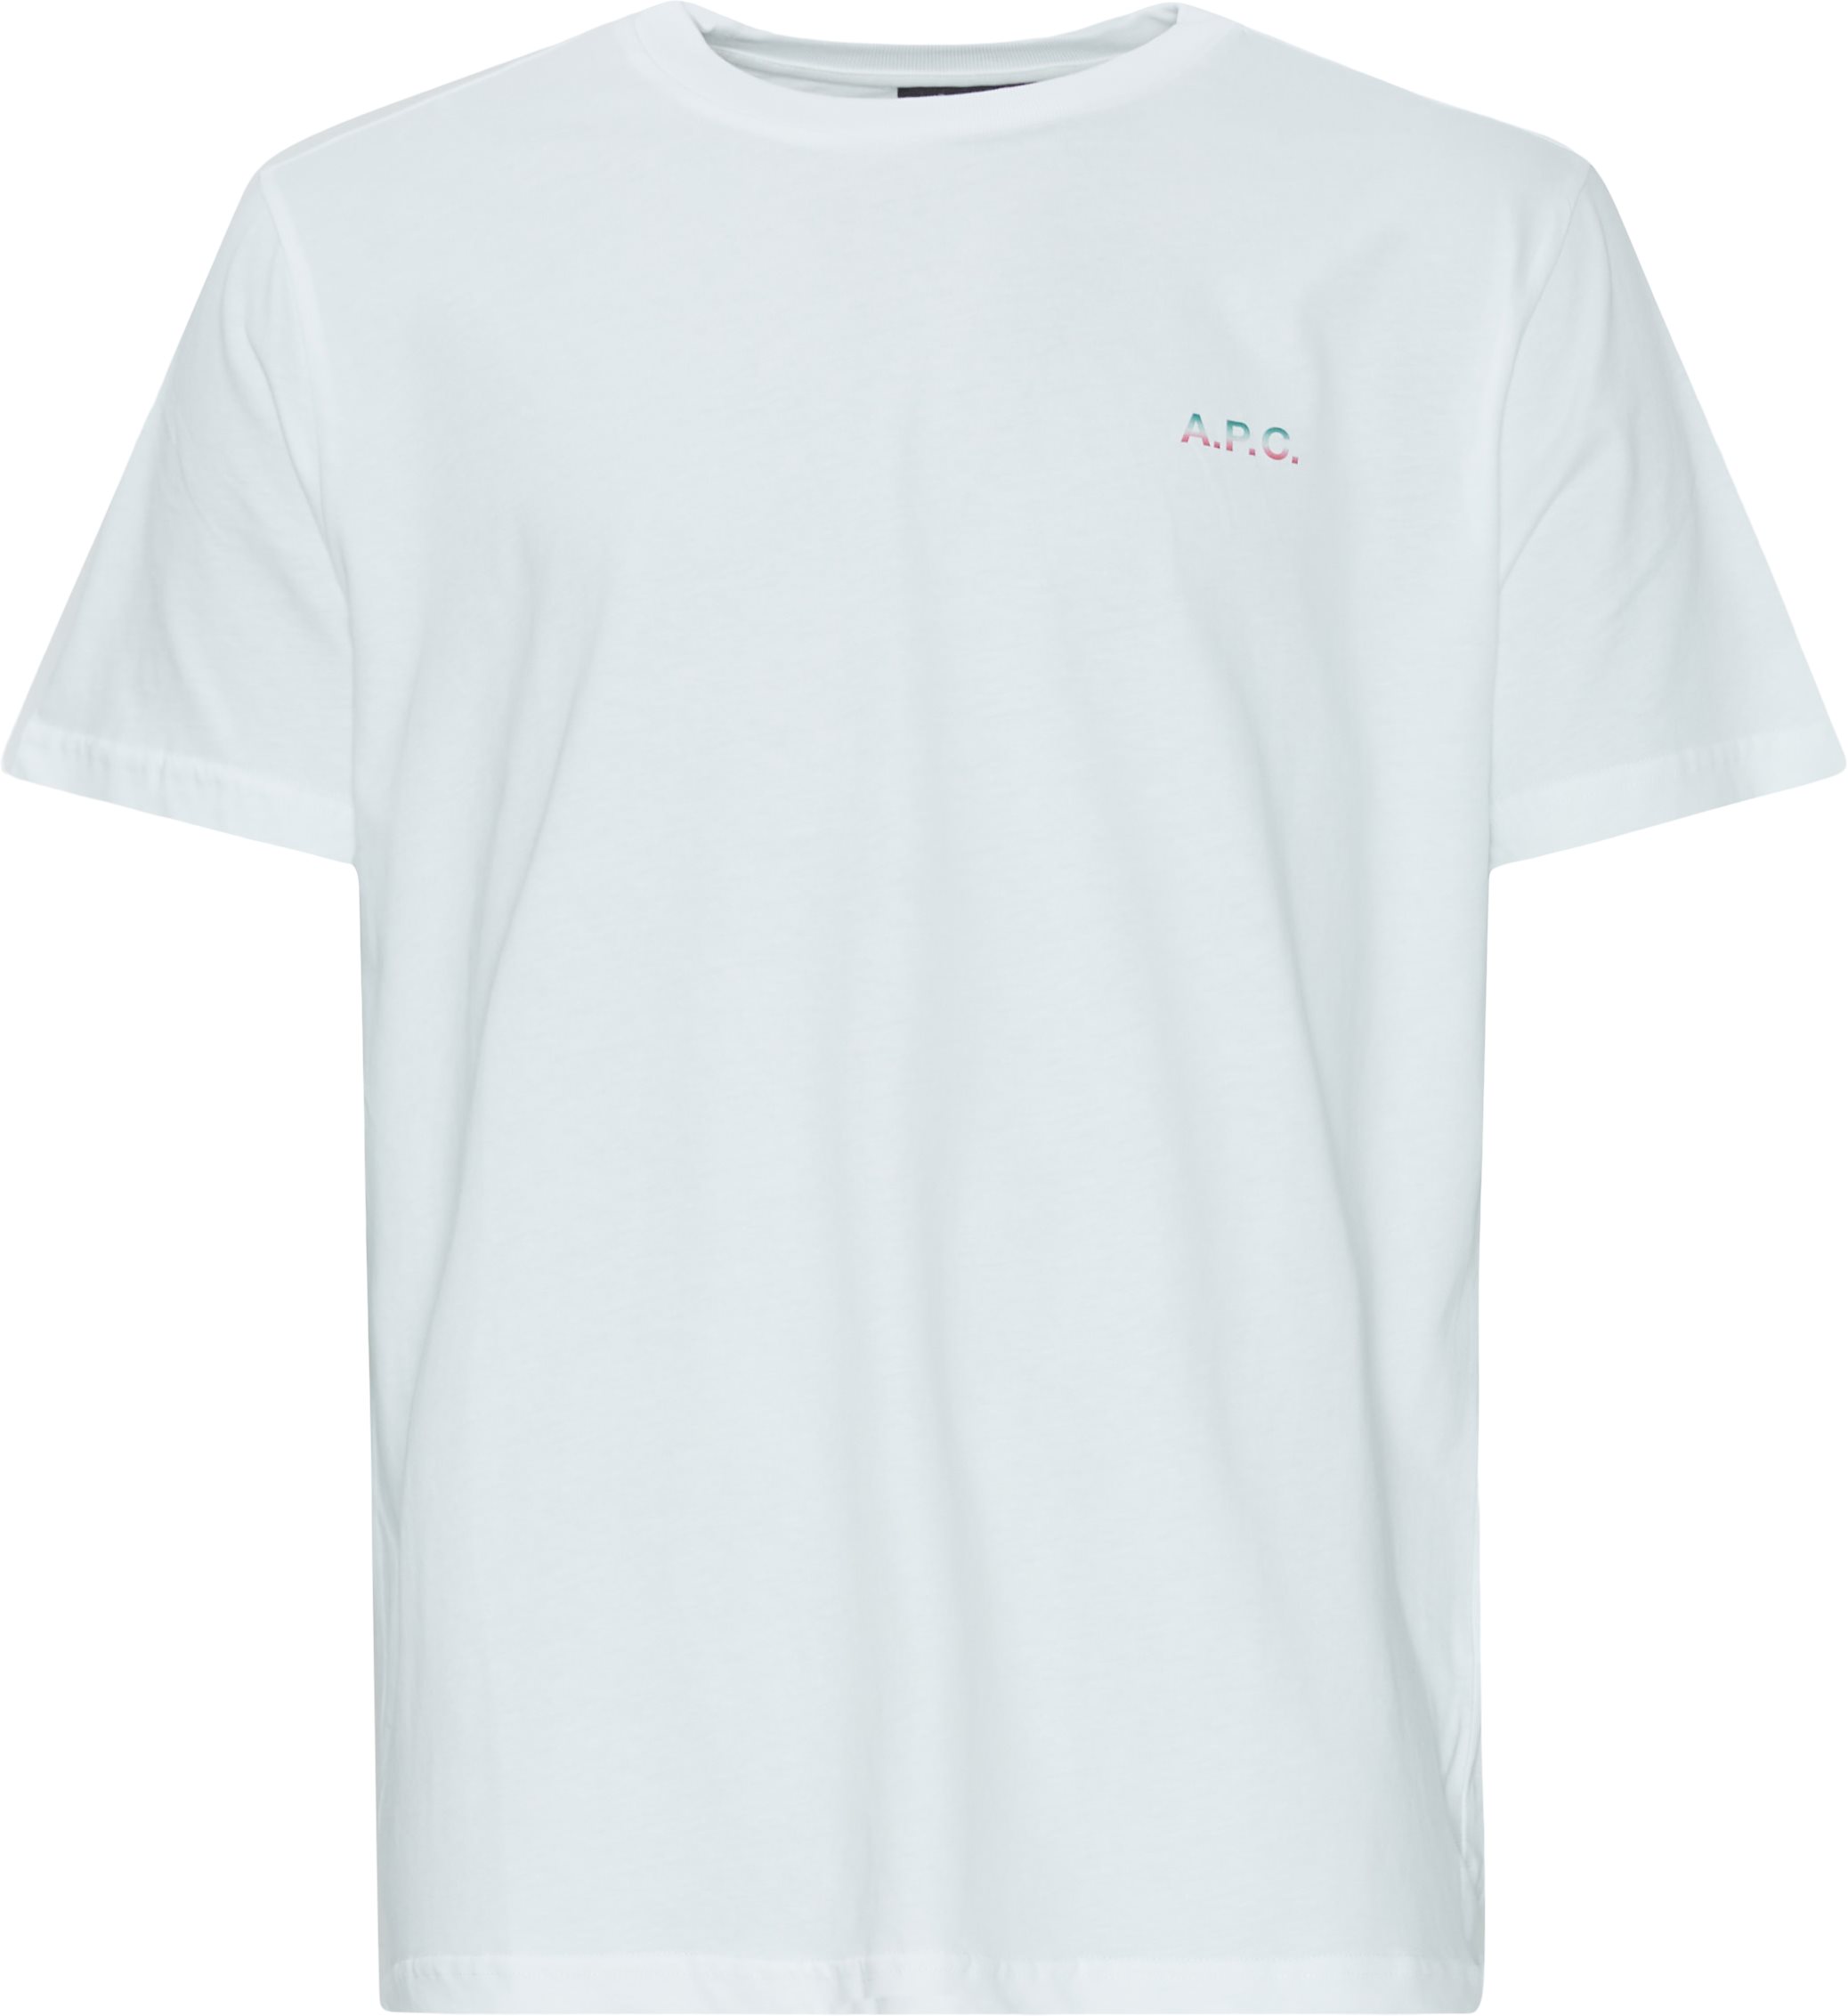 A.P.C. T-shirts COEIO H26360 Vit